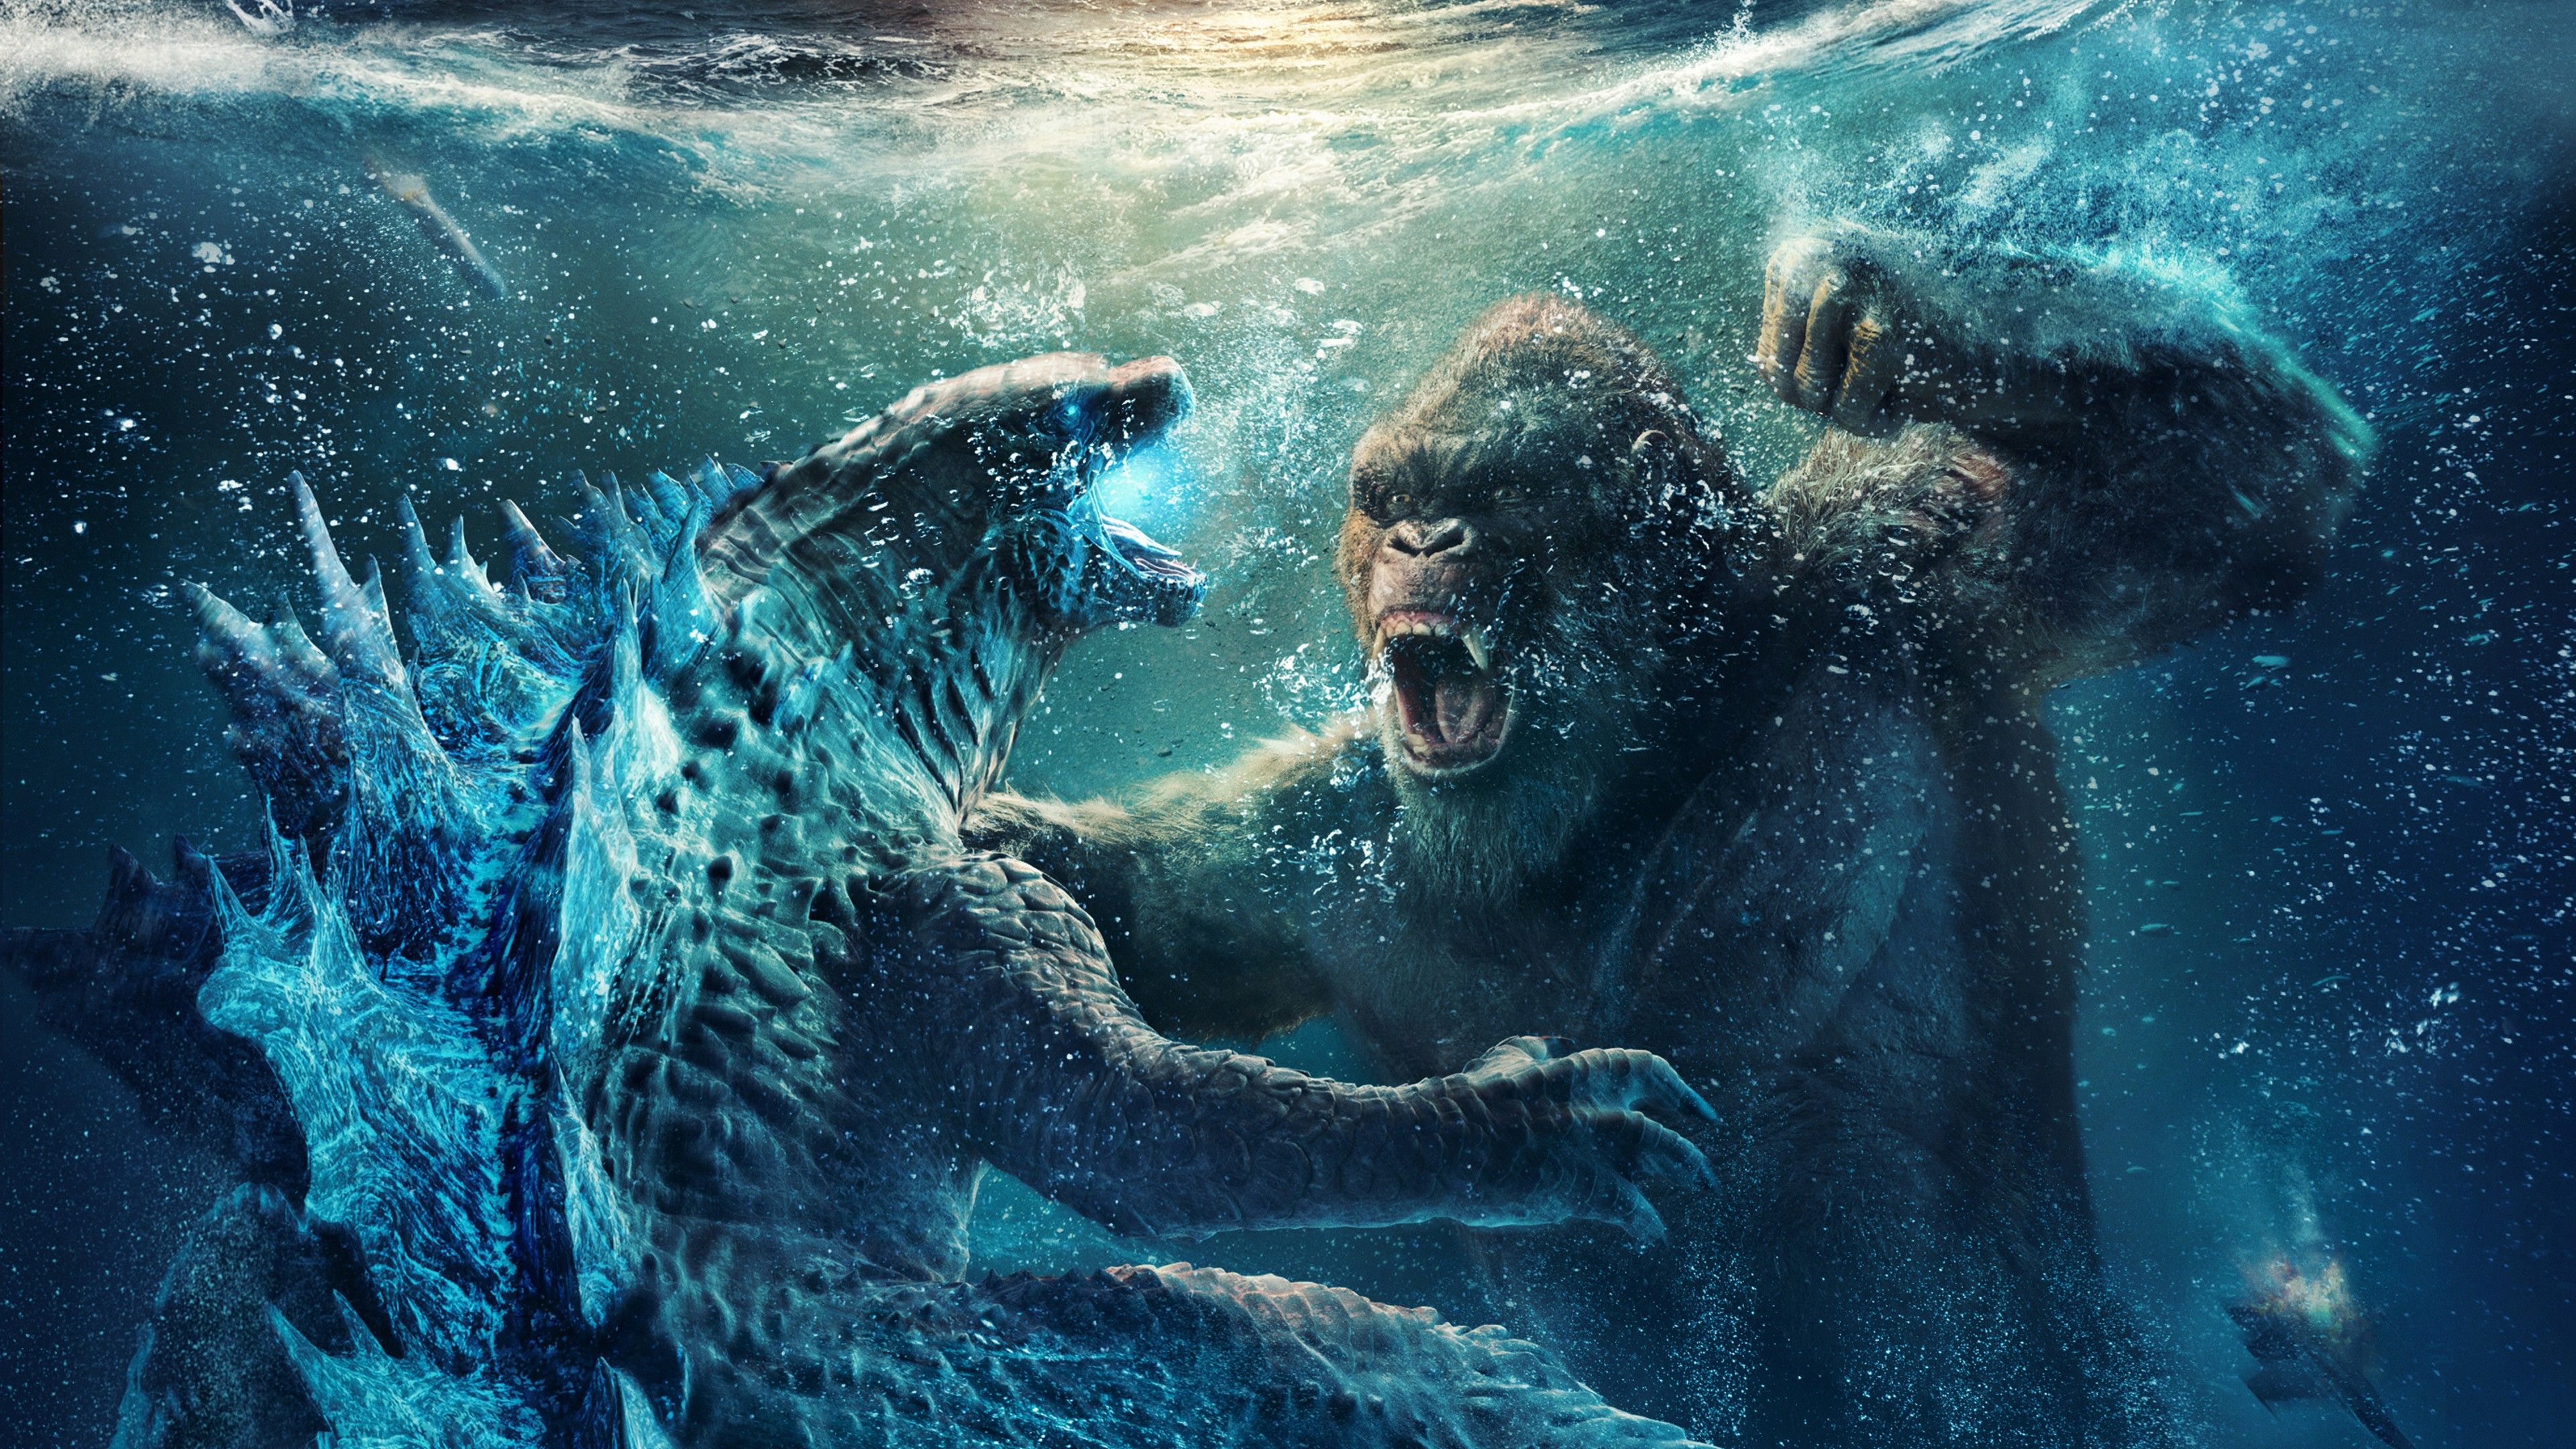 King Kong Vs Godzilla 4K Wallpapers Wallpaper Cave